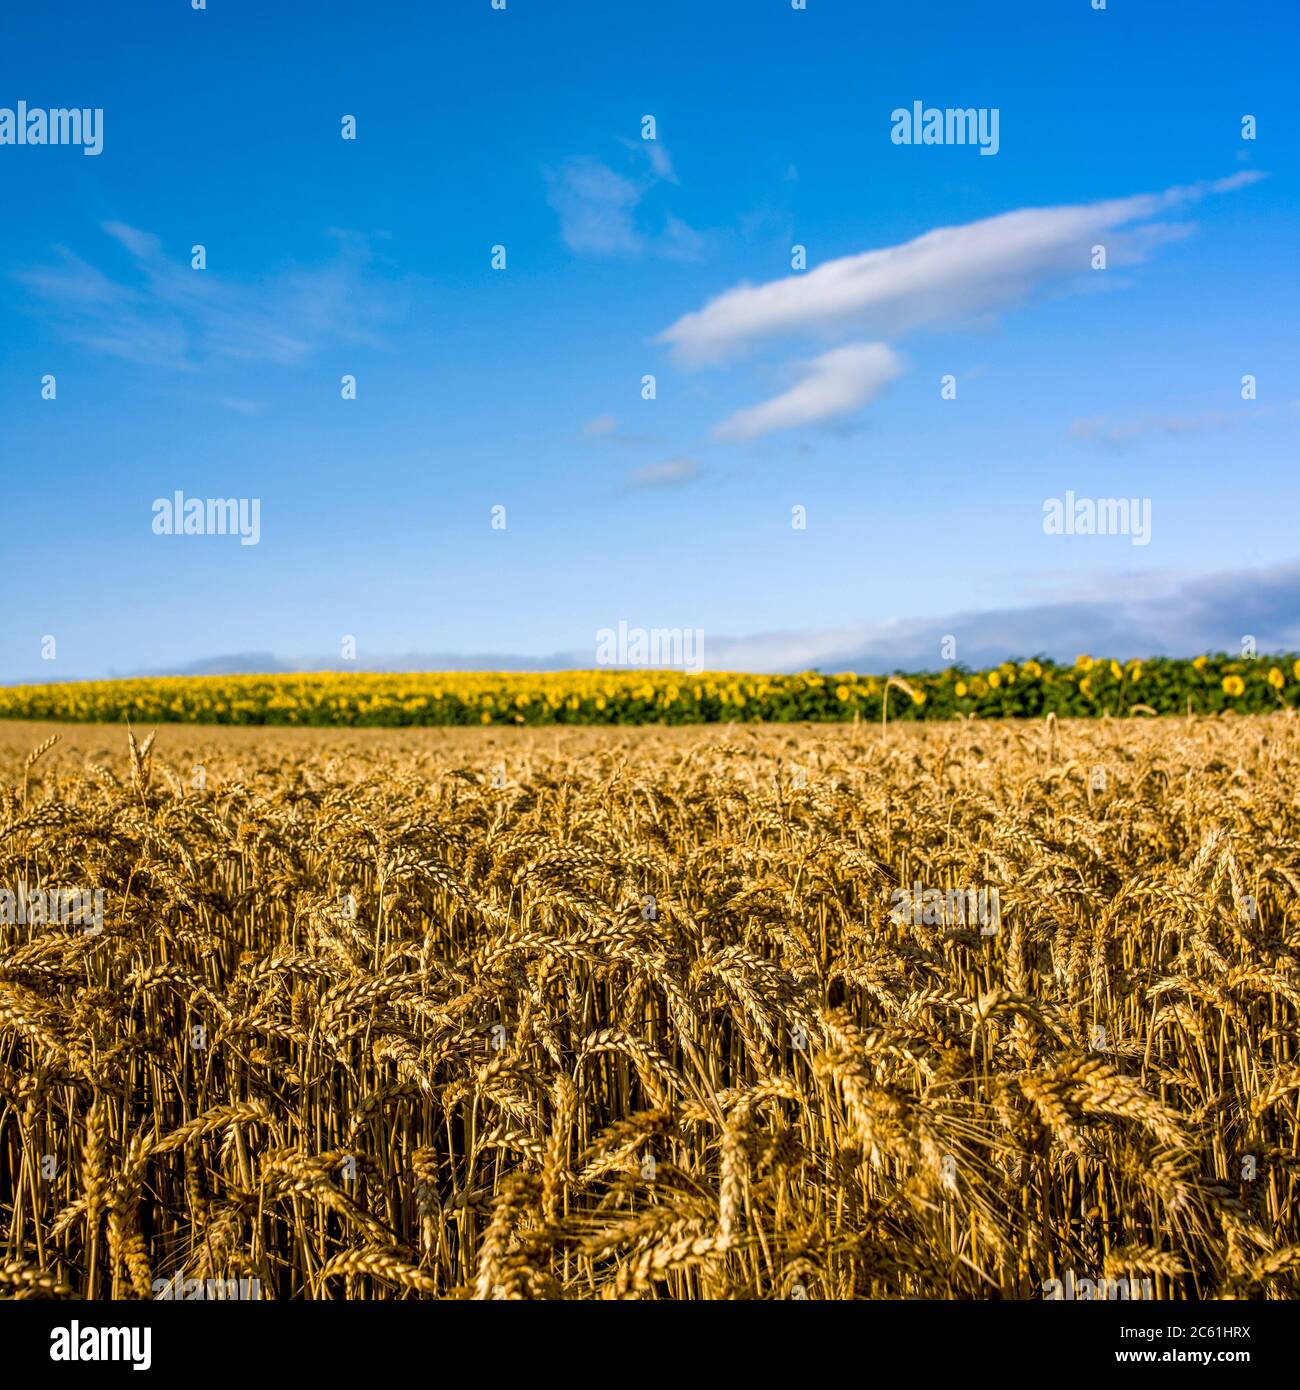 Field of barley, Limagne plain, Puy de Dome, Auvergne-Rhone-Alpes, France Stock Photo